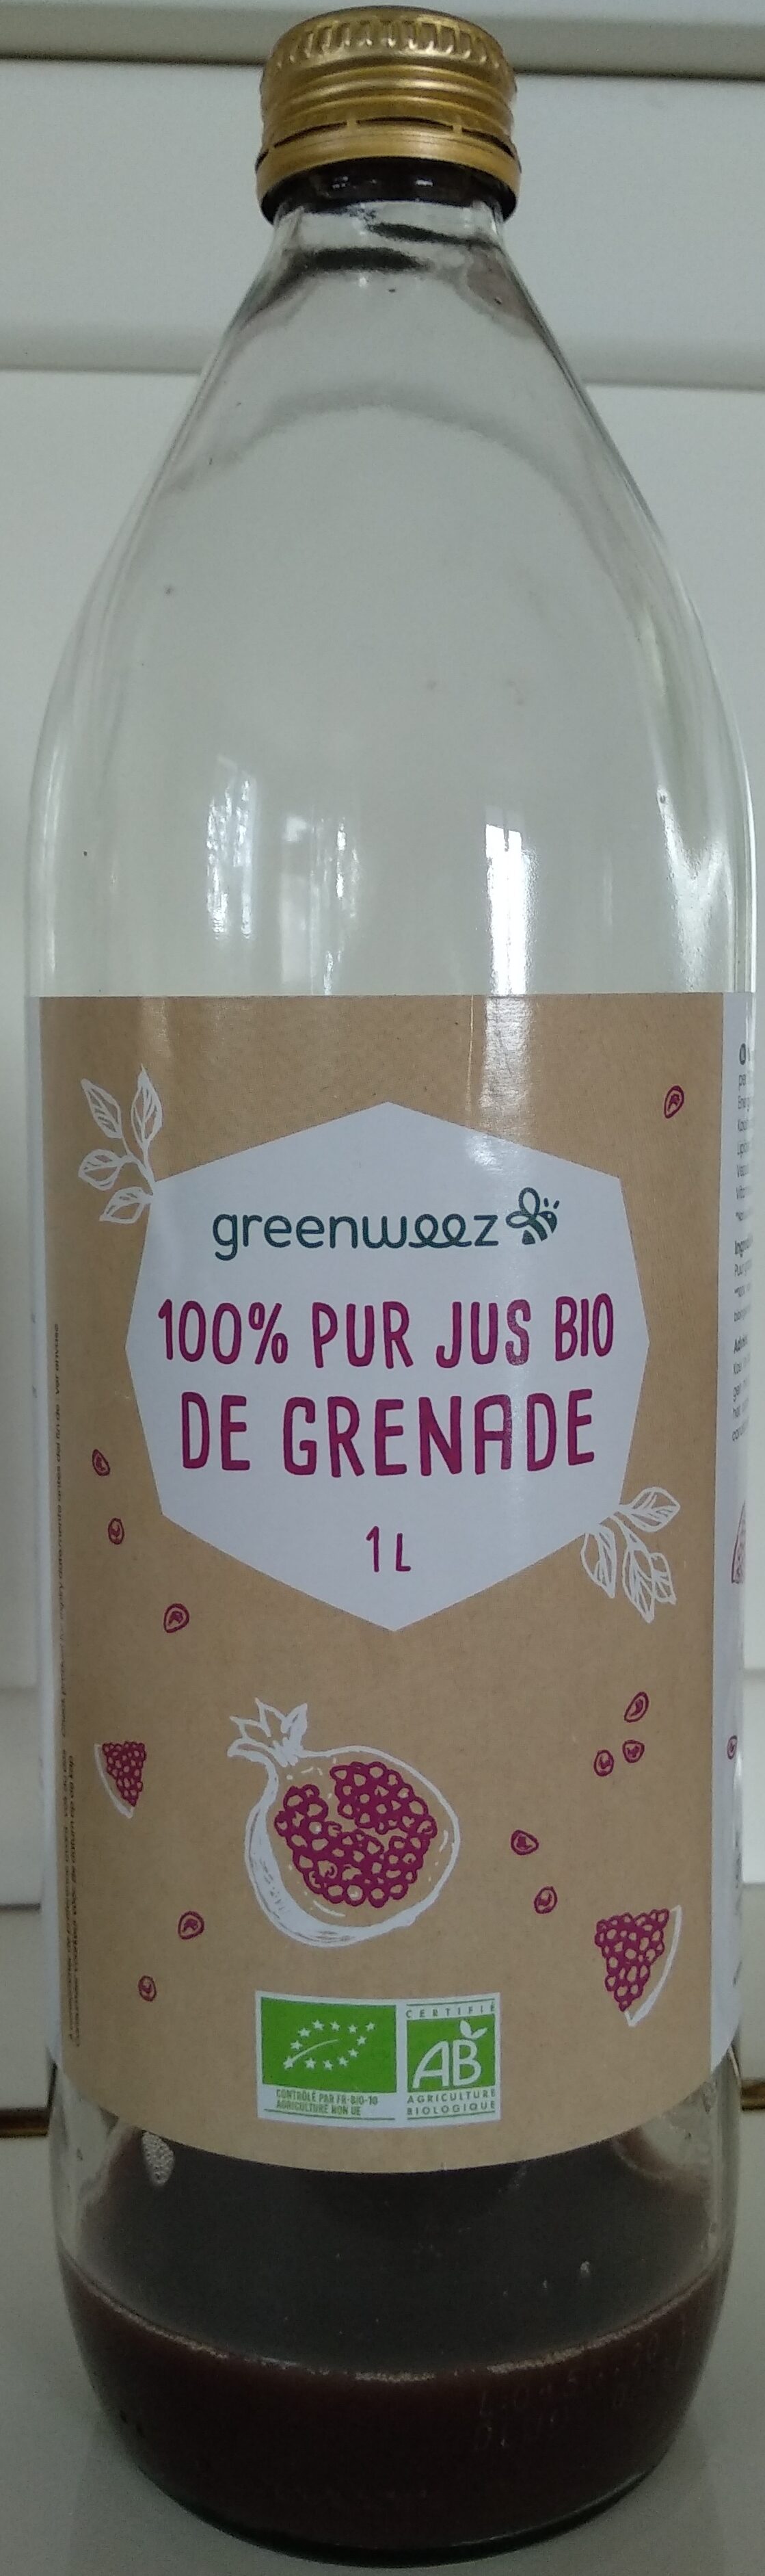 100% pur jus de grenade - Product - fr